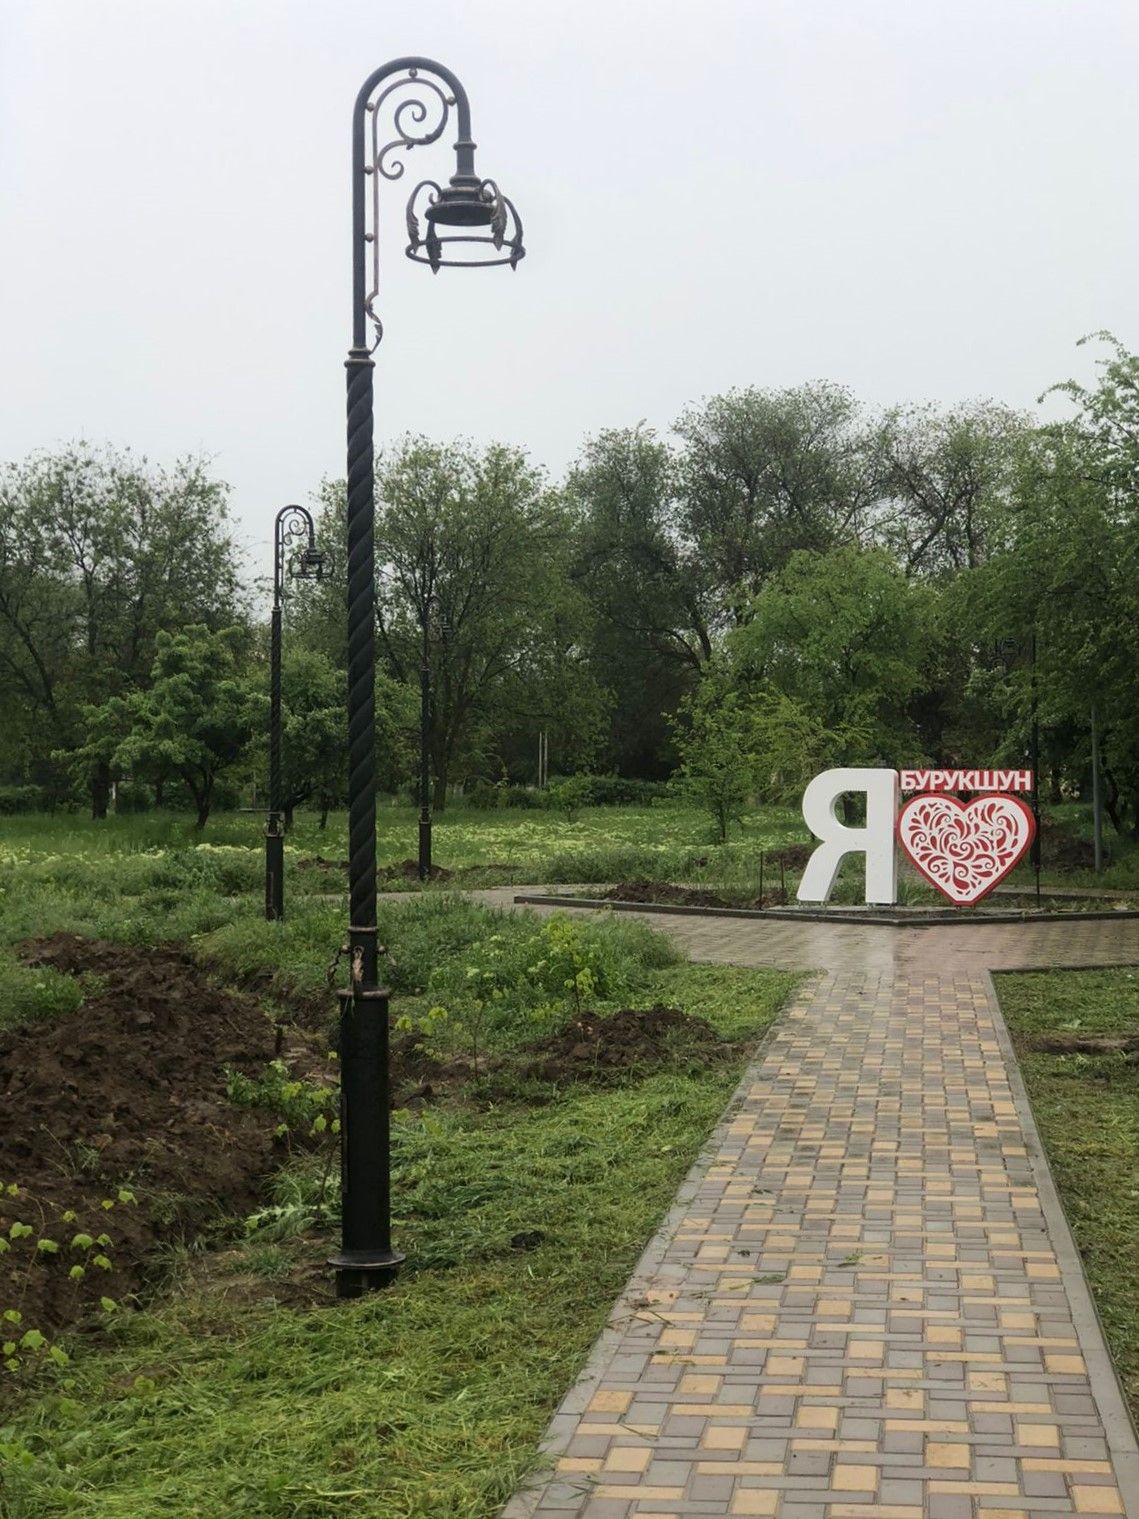 Парковую зону обновили в селе Бурукшун Ипатовского округа. Фото: администрация Ипатовского округа